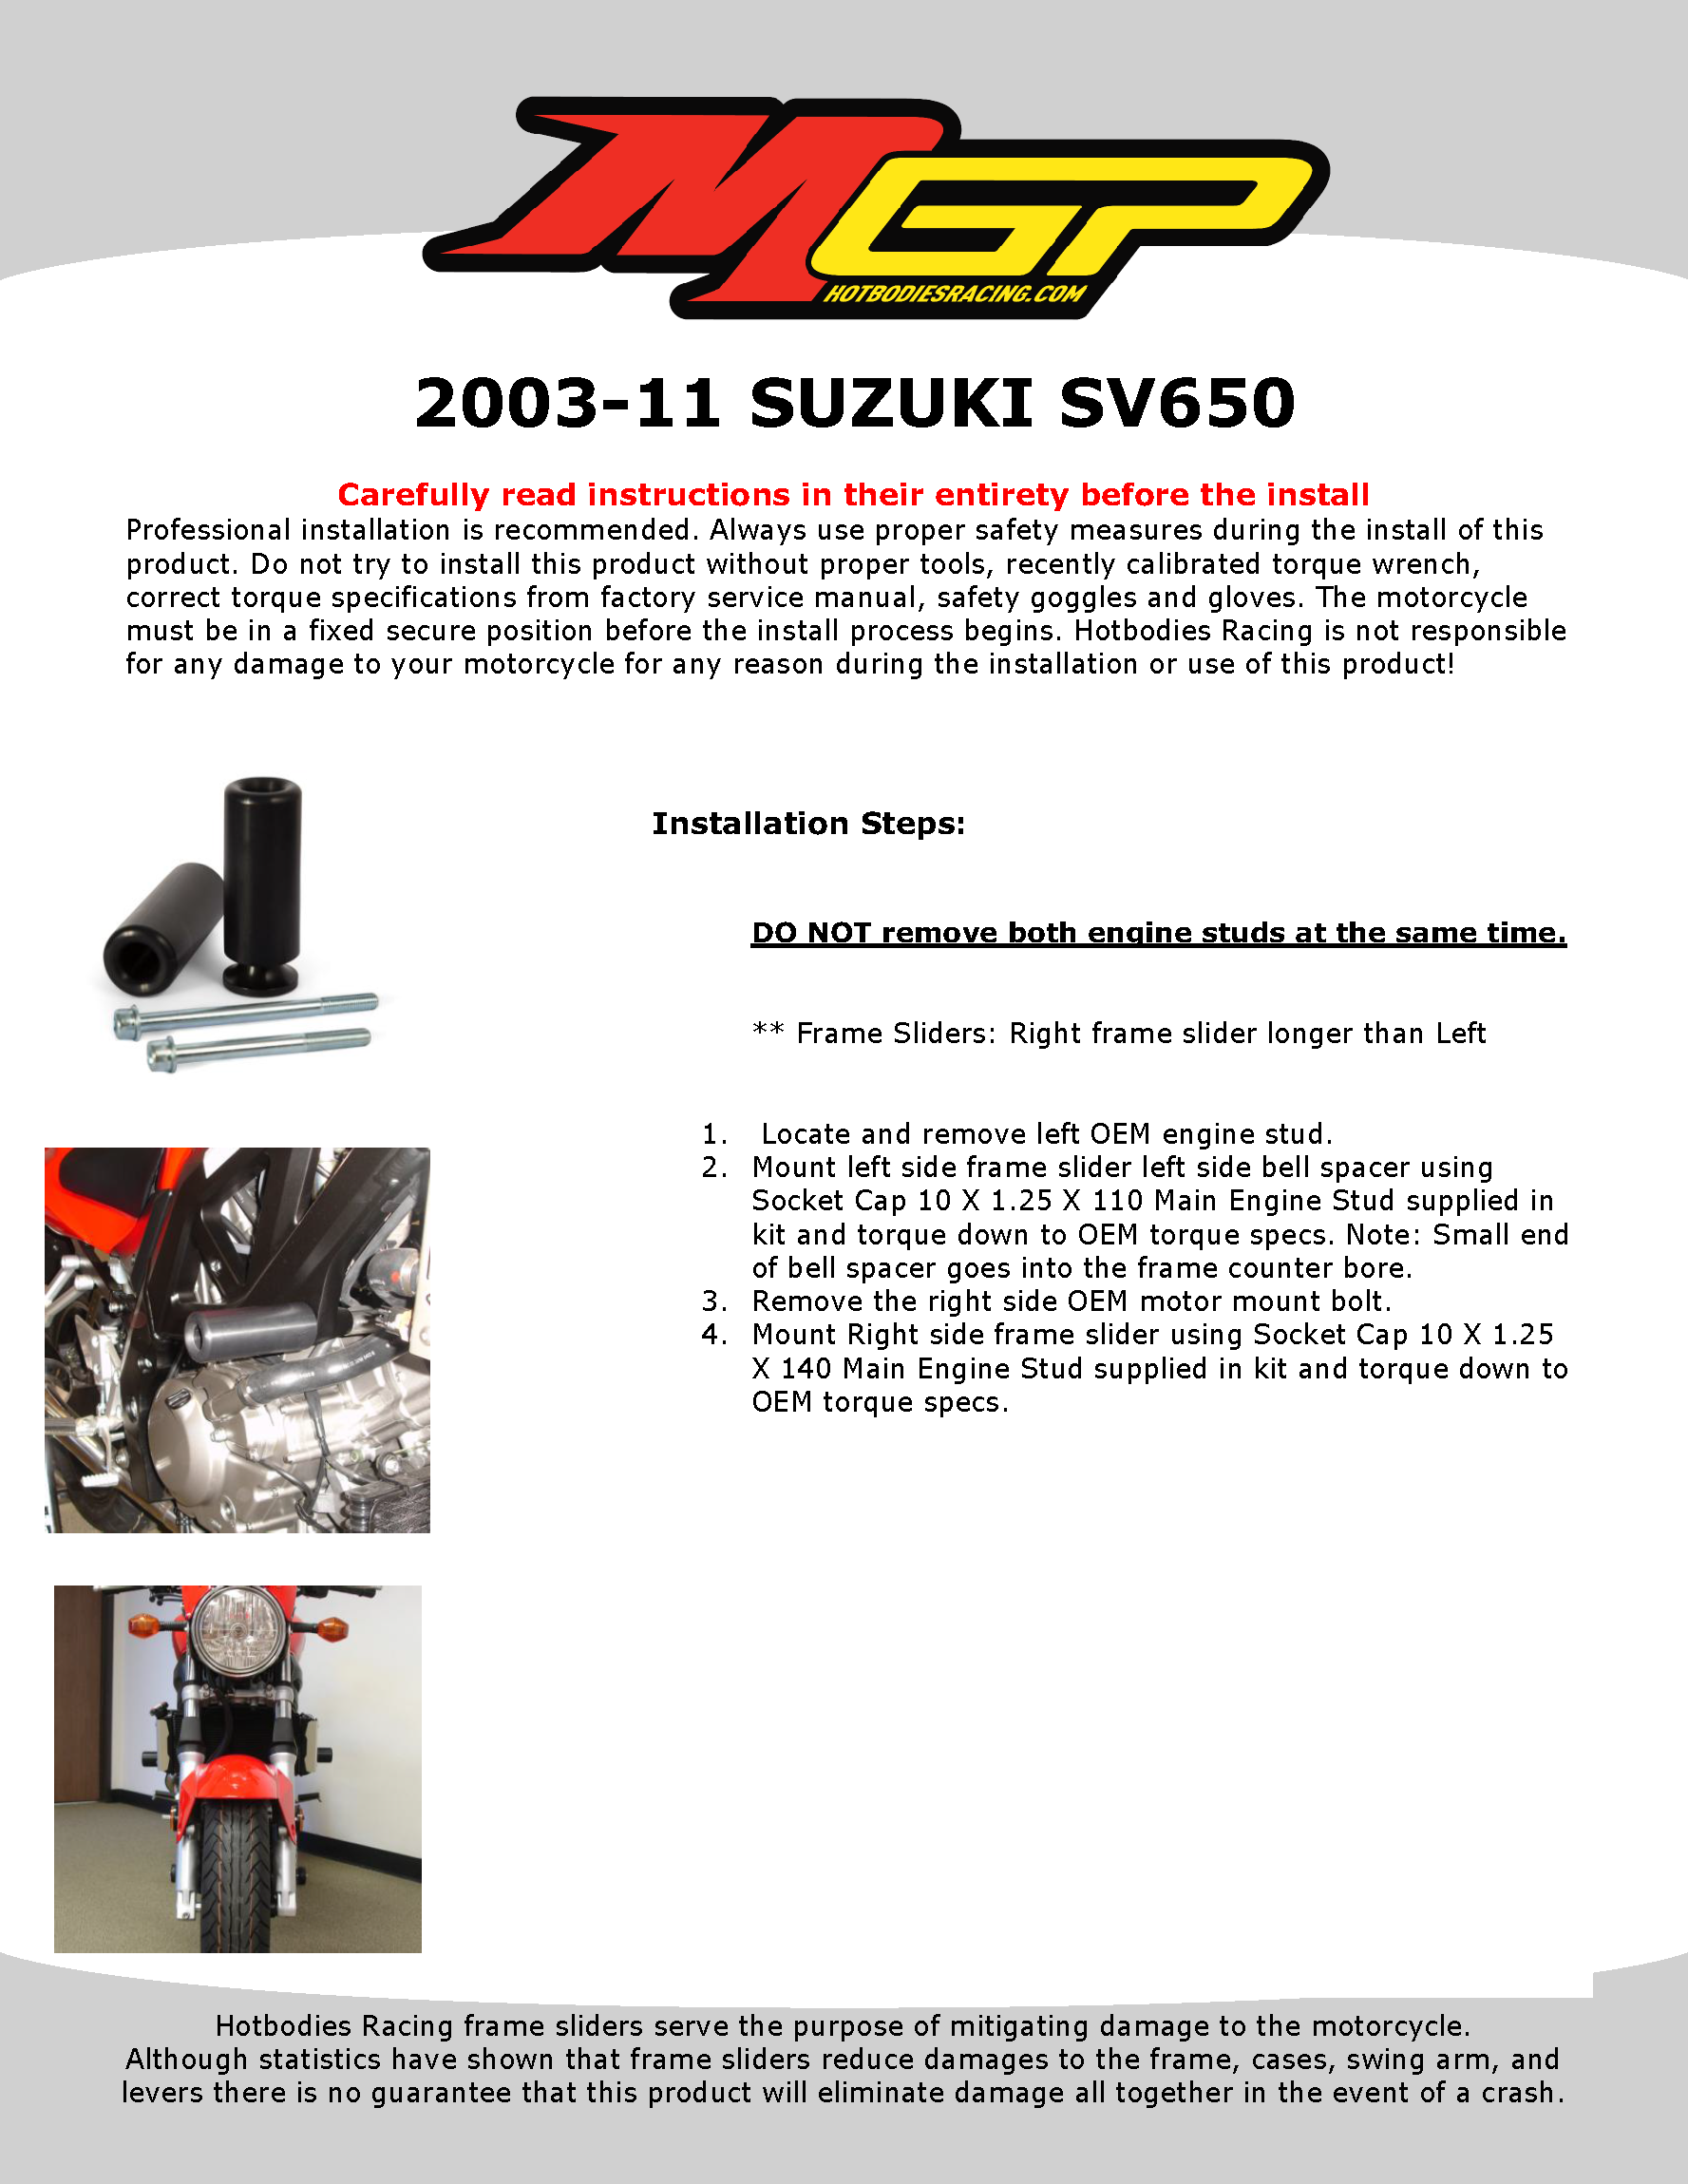 

2003-11 SUZUKI SV650

